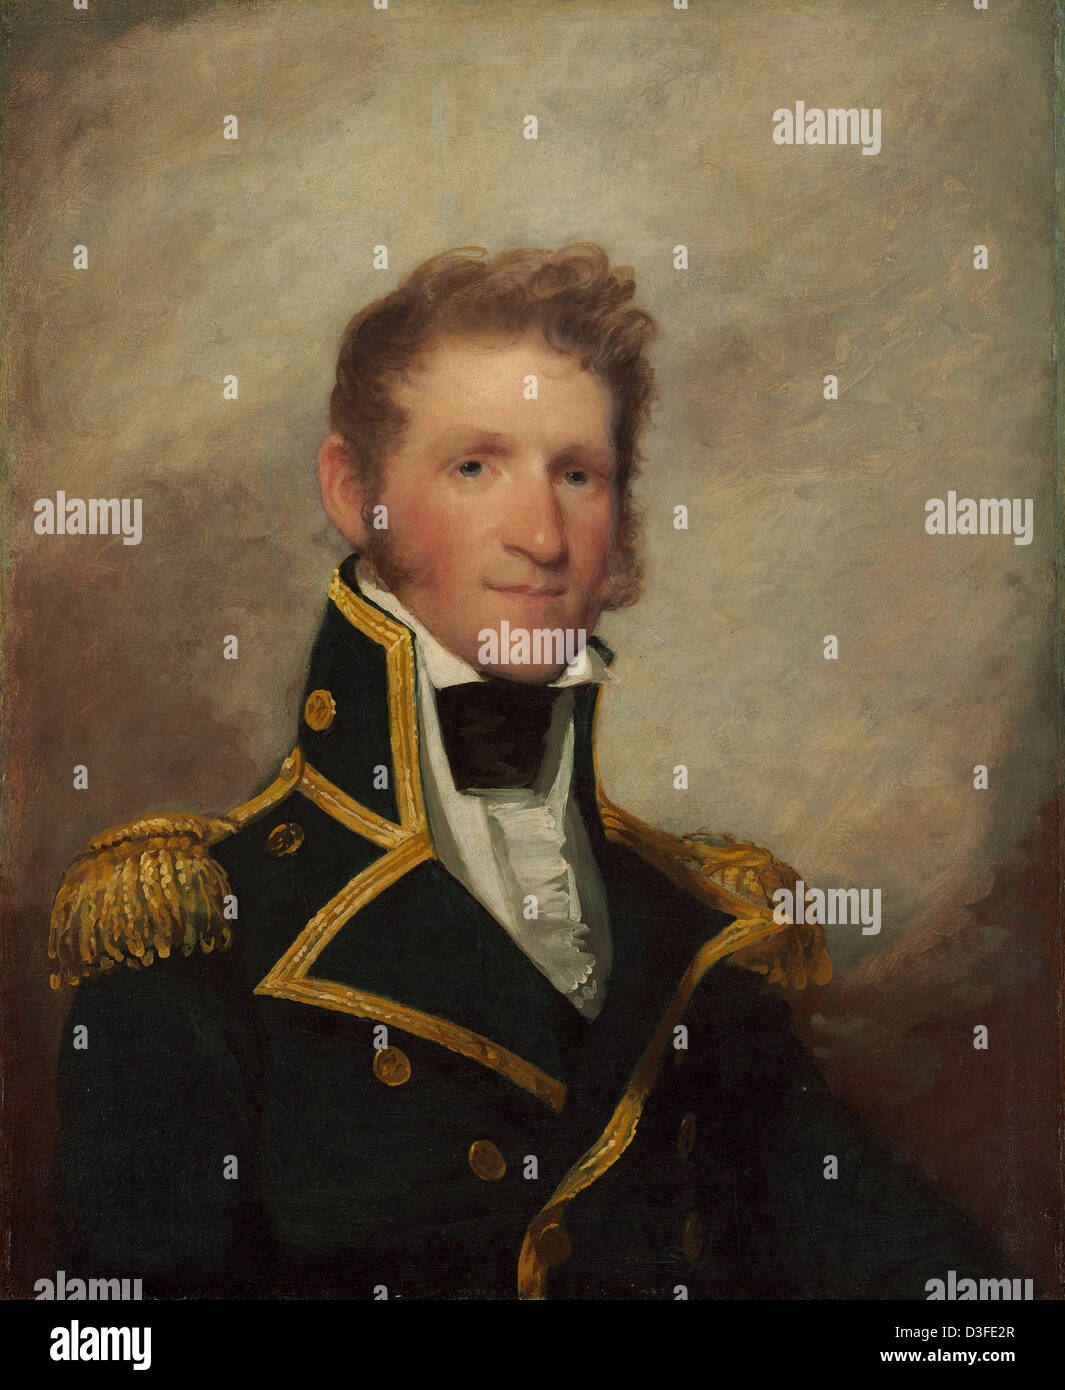 Gilbert Stuart, commodore Thomas Macdonough, américain, 1755 - 1828, ch. 1815/1818, huile sur bois Banque D'Images